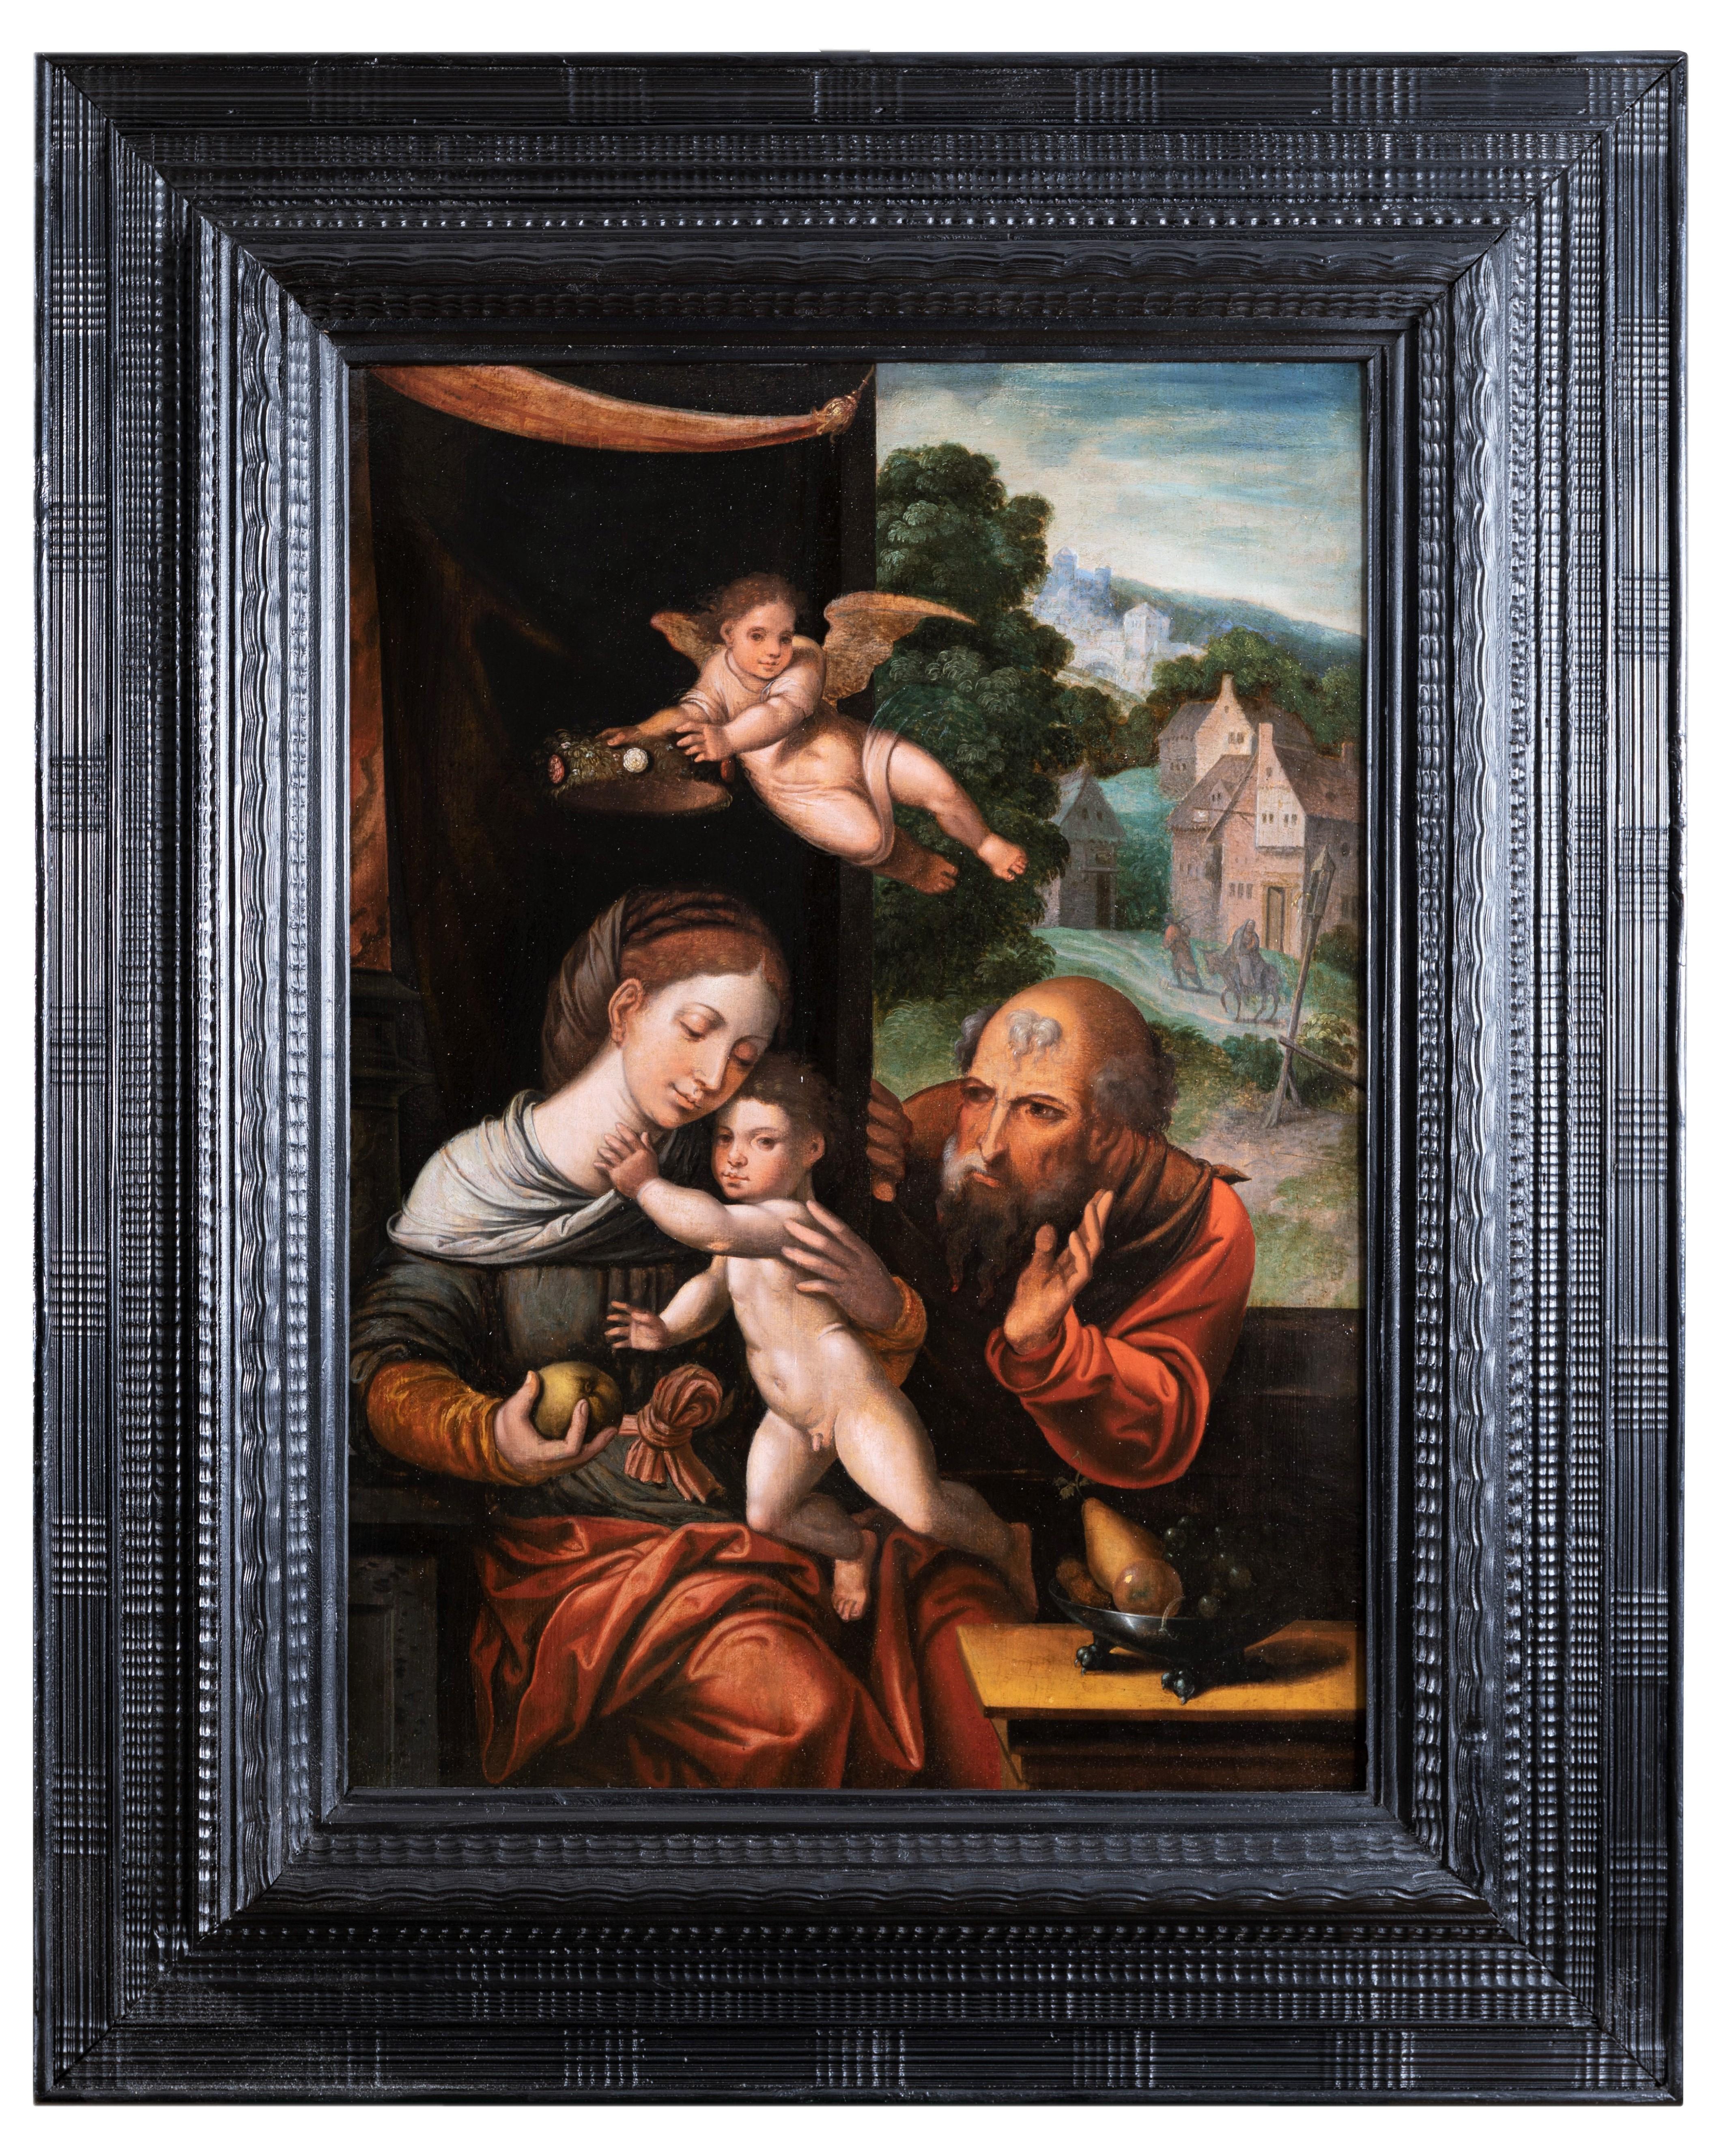 Heilige Familie mit einem Engel, Werkstatt Pieter Coecke Van Aelst (Alost, 1502 - Bruxelles, 1550)
Getreu den Traditionen der Spätgotik und der Frührenaissance stellt unser Gemälde ein beliebtes Motiv der flämischen Maler dar, die Madonna mit dem